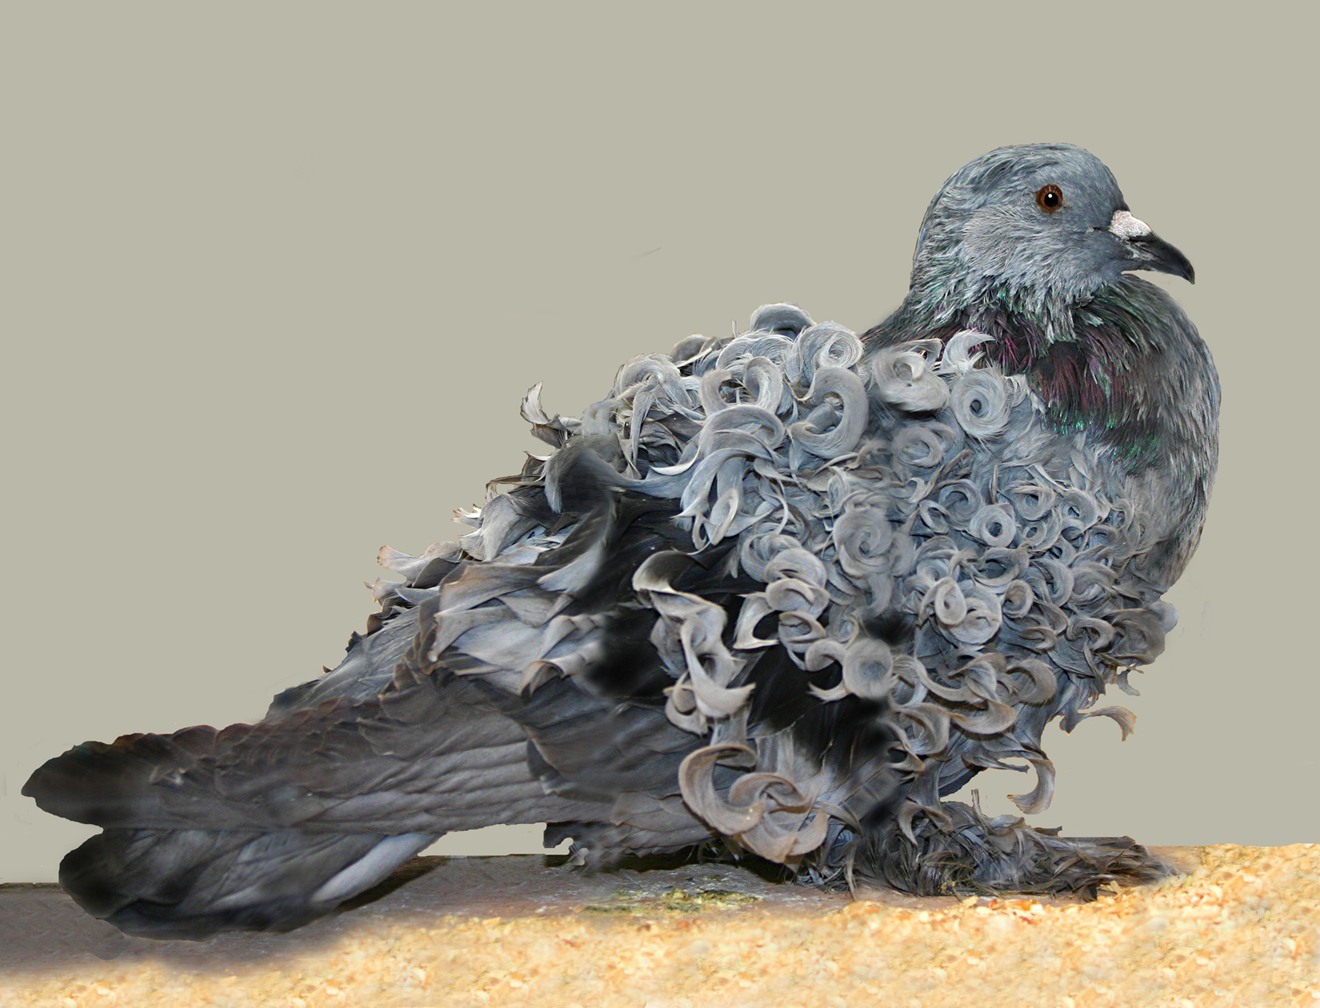 Những lọn lông xoăn trên thân chú
chim bồ câu Frillback khiến người ta dễ liên
tưởng đến những bông hoa.